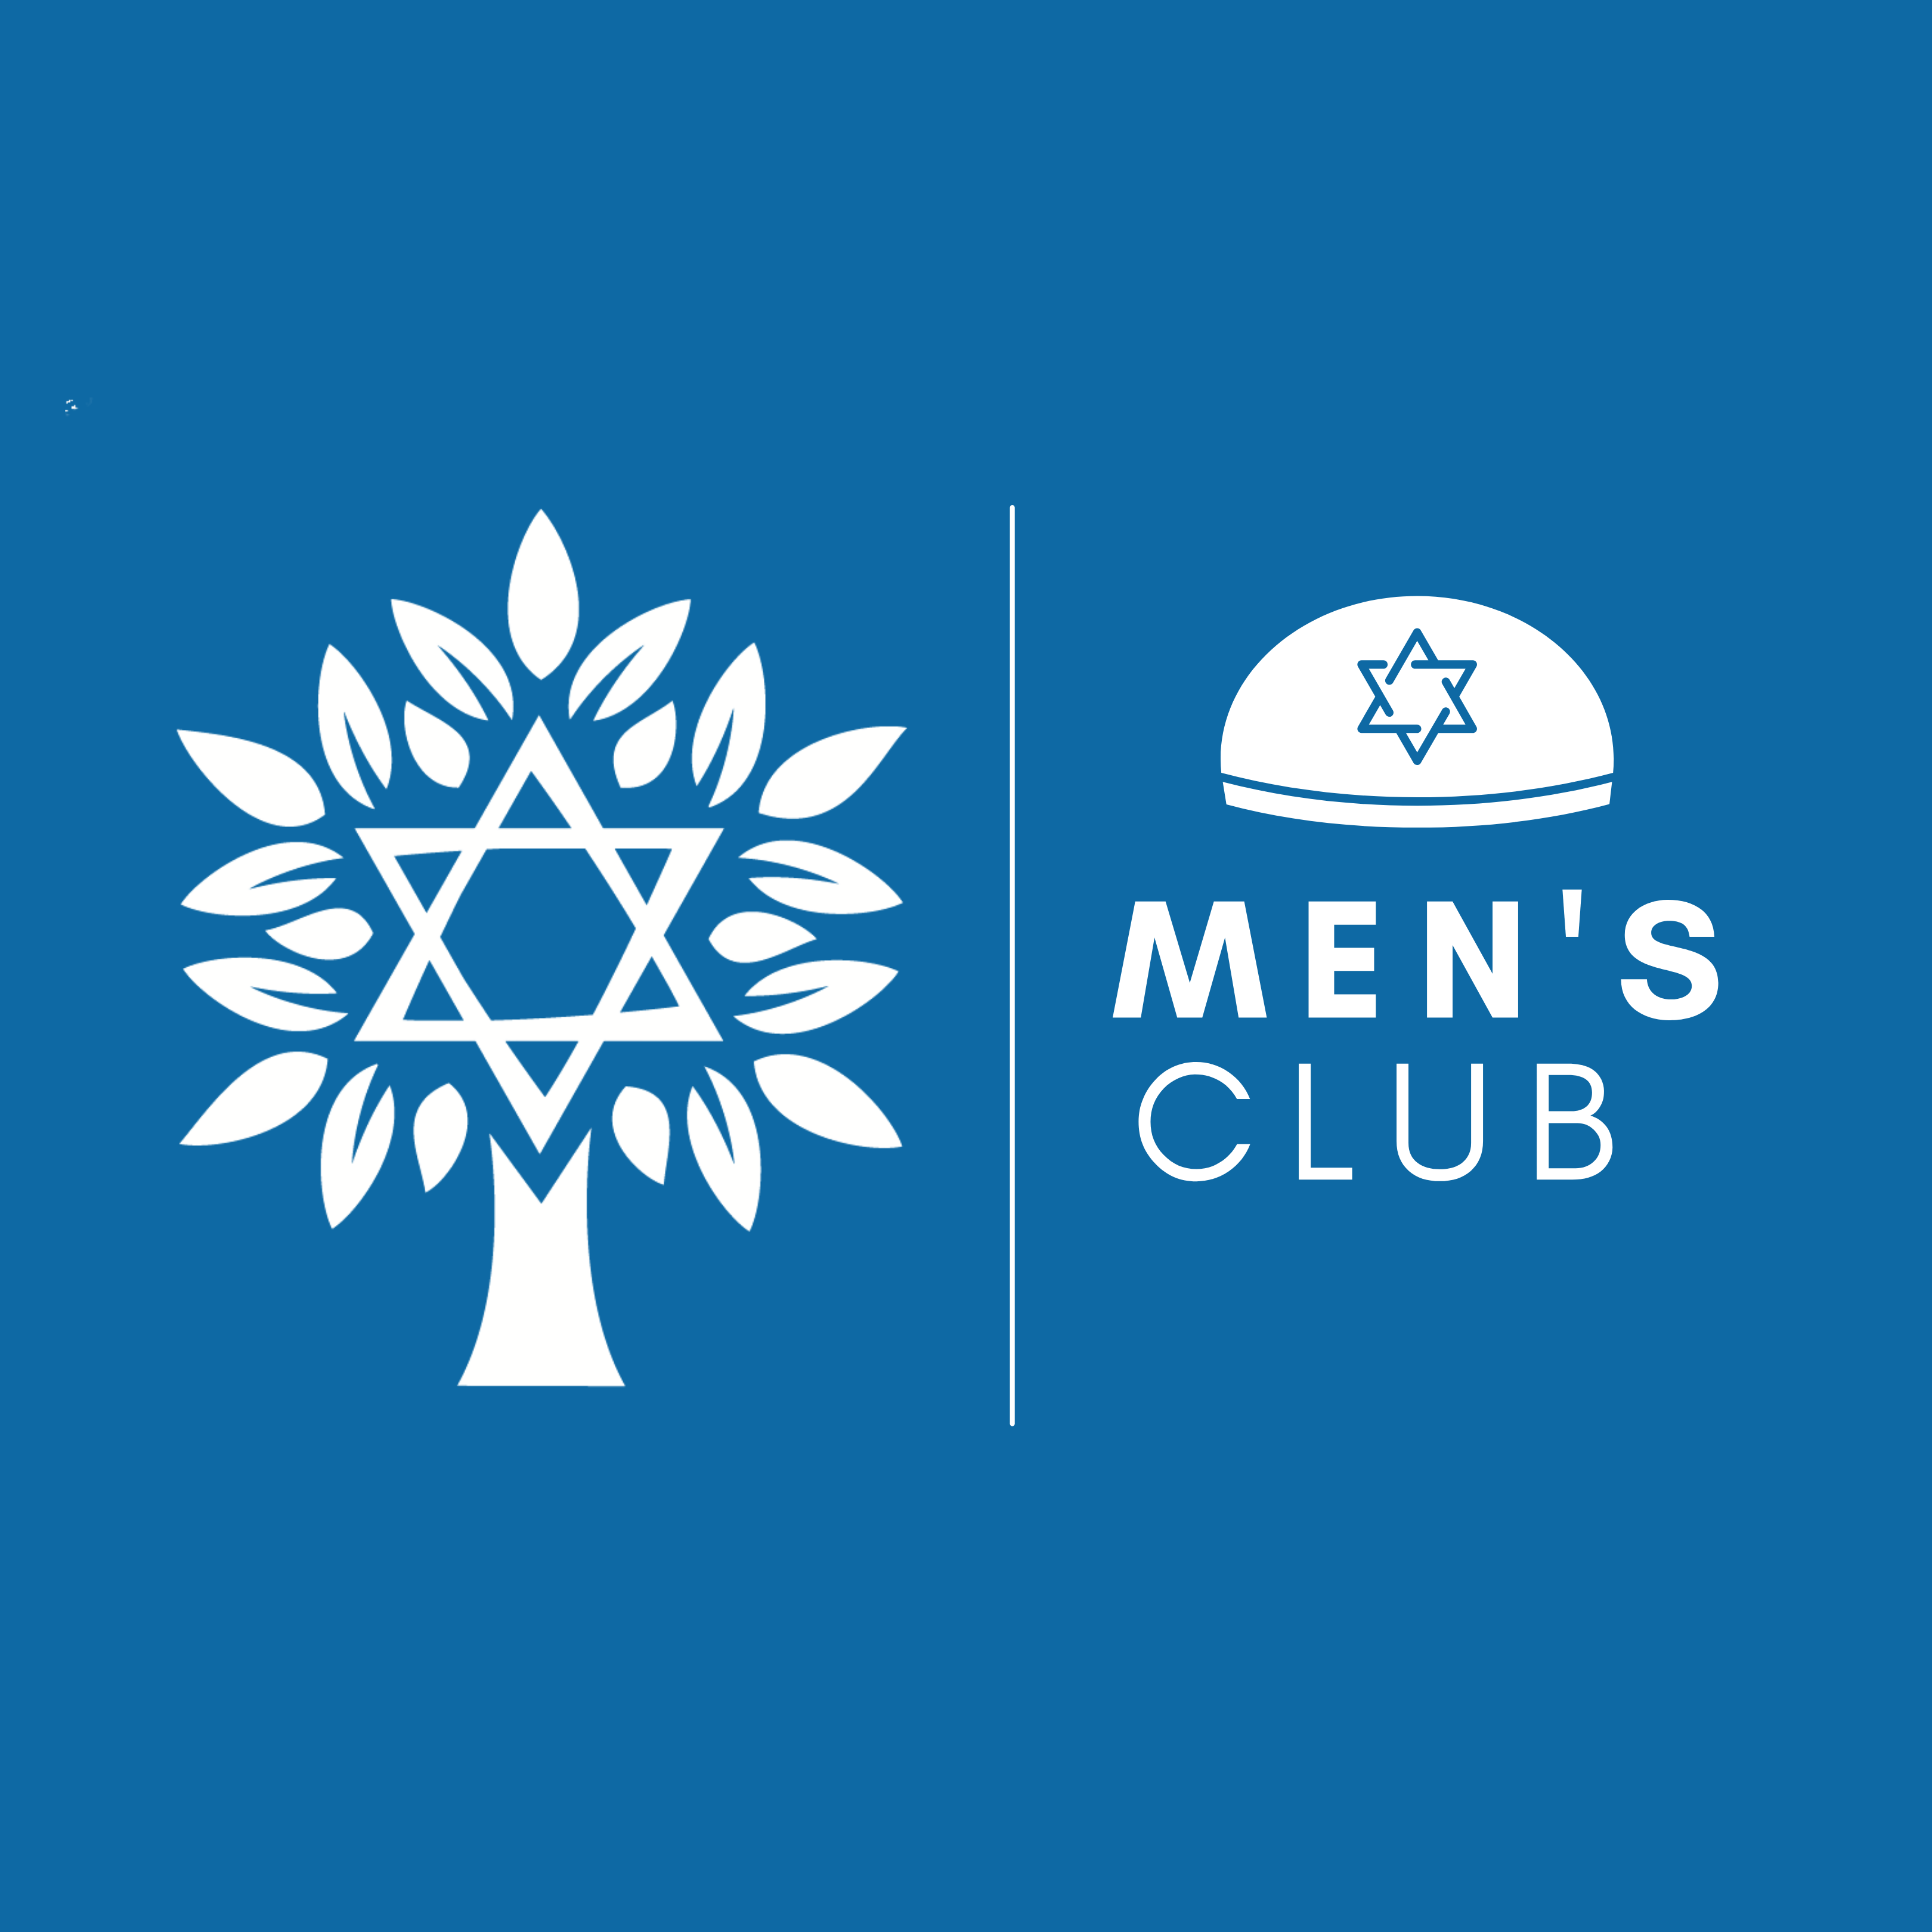 Men's Club Steak, Scotch and Torah